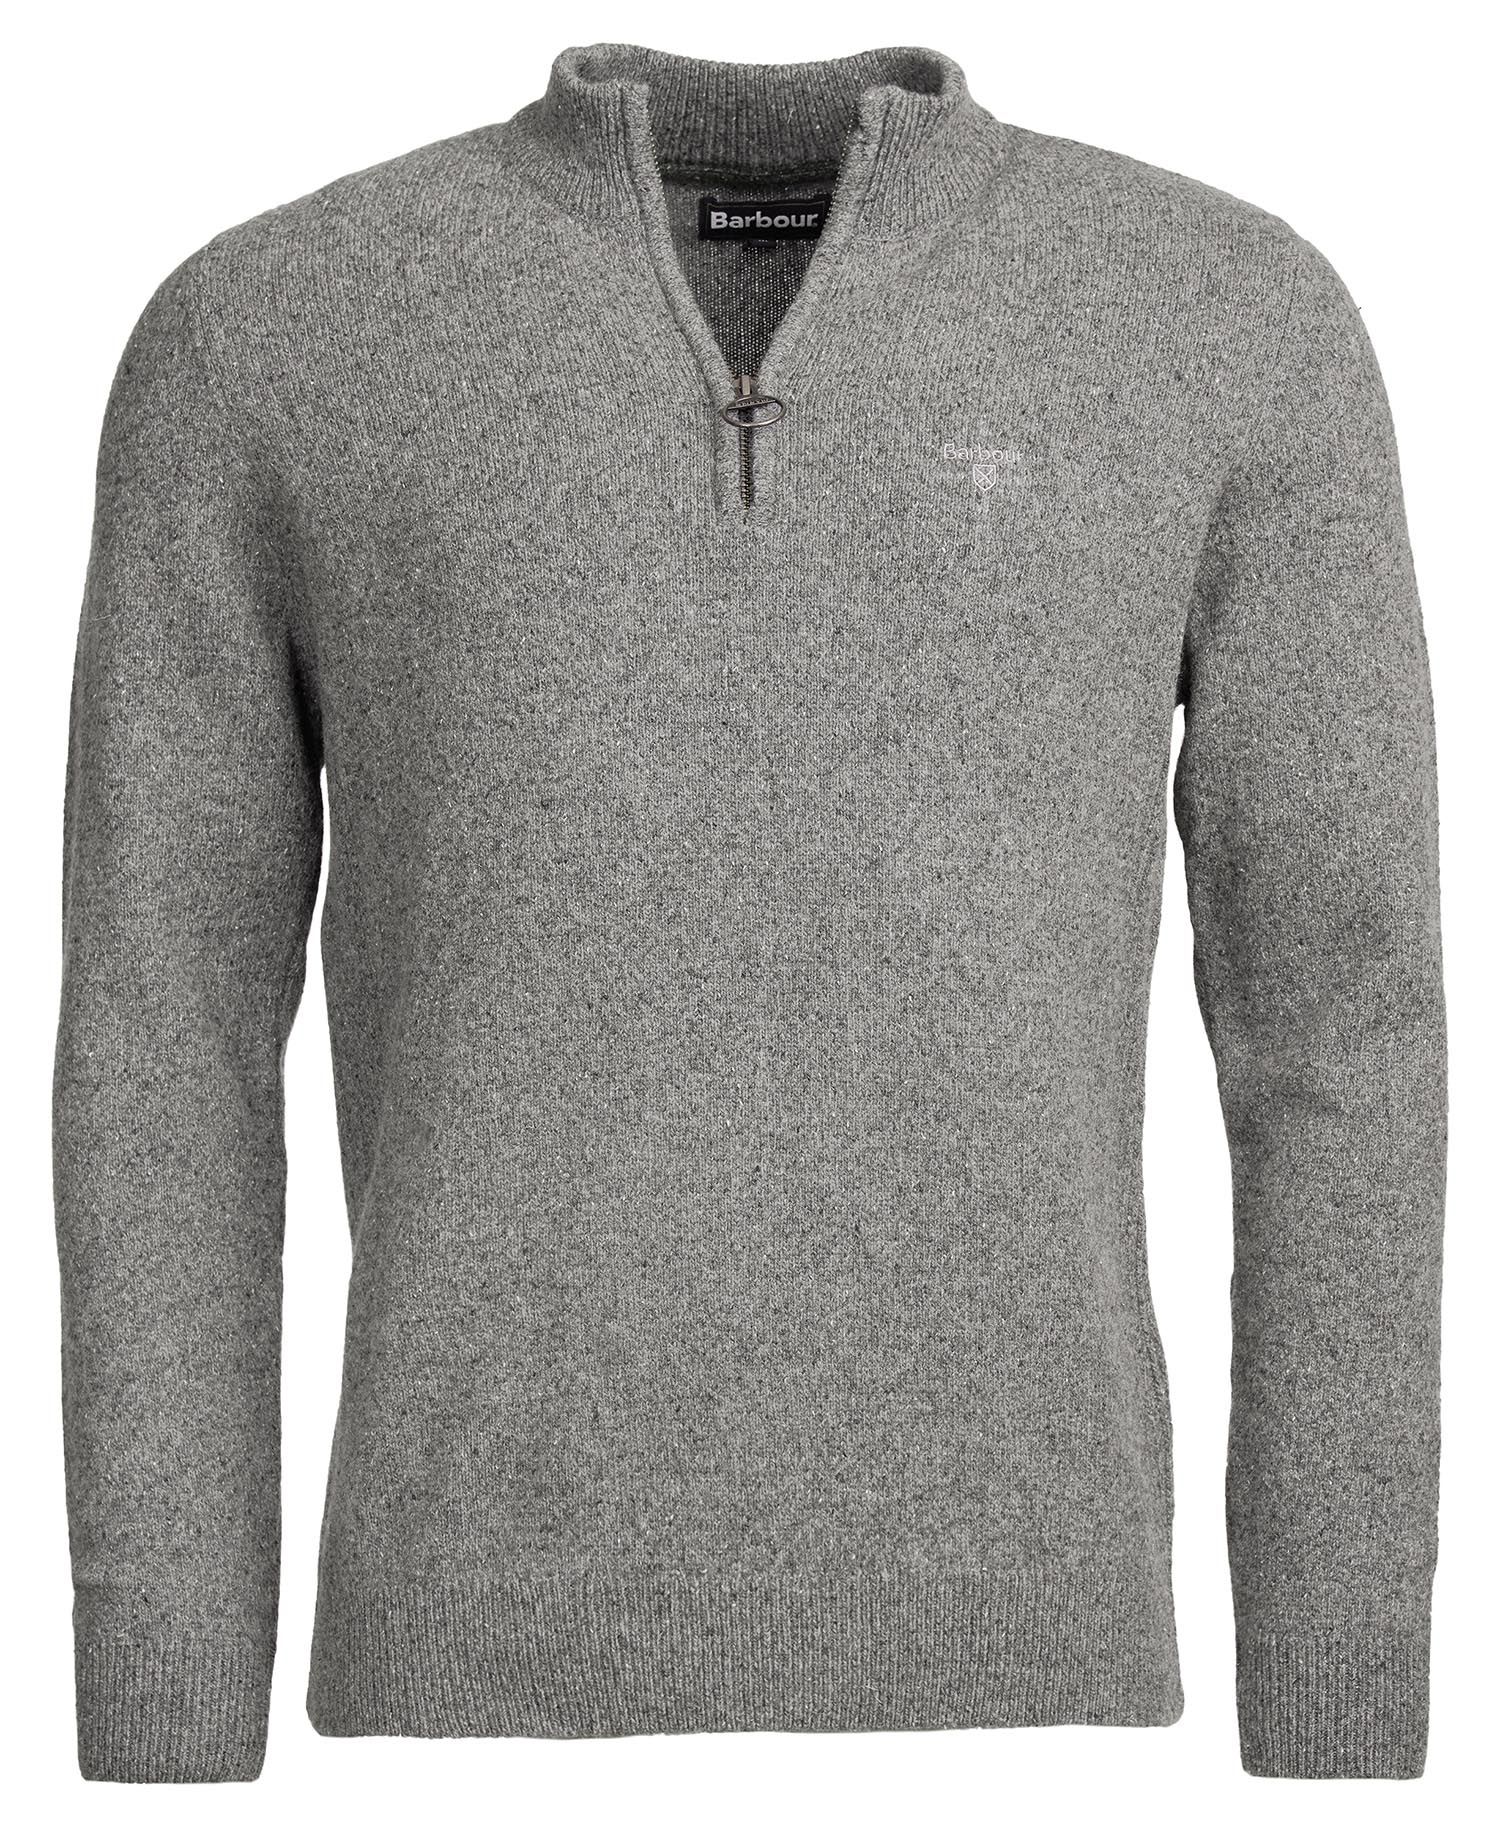 Barbour Tisbury 1/2 Zip Sweater - Grey